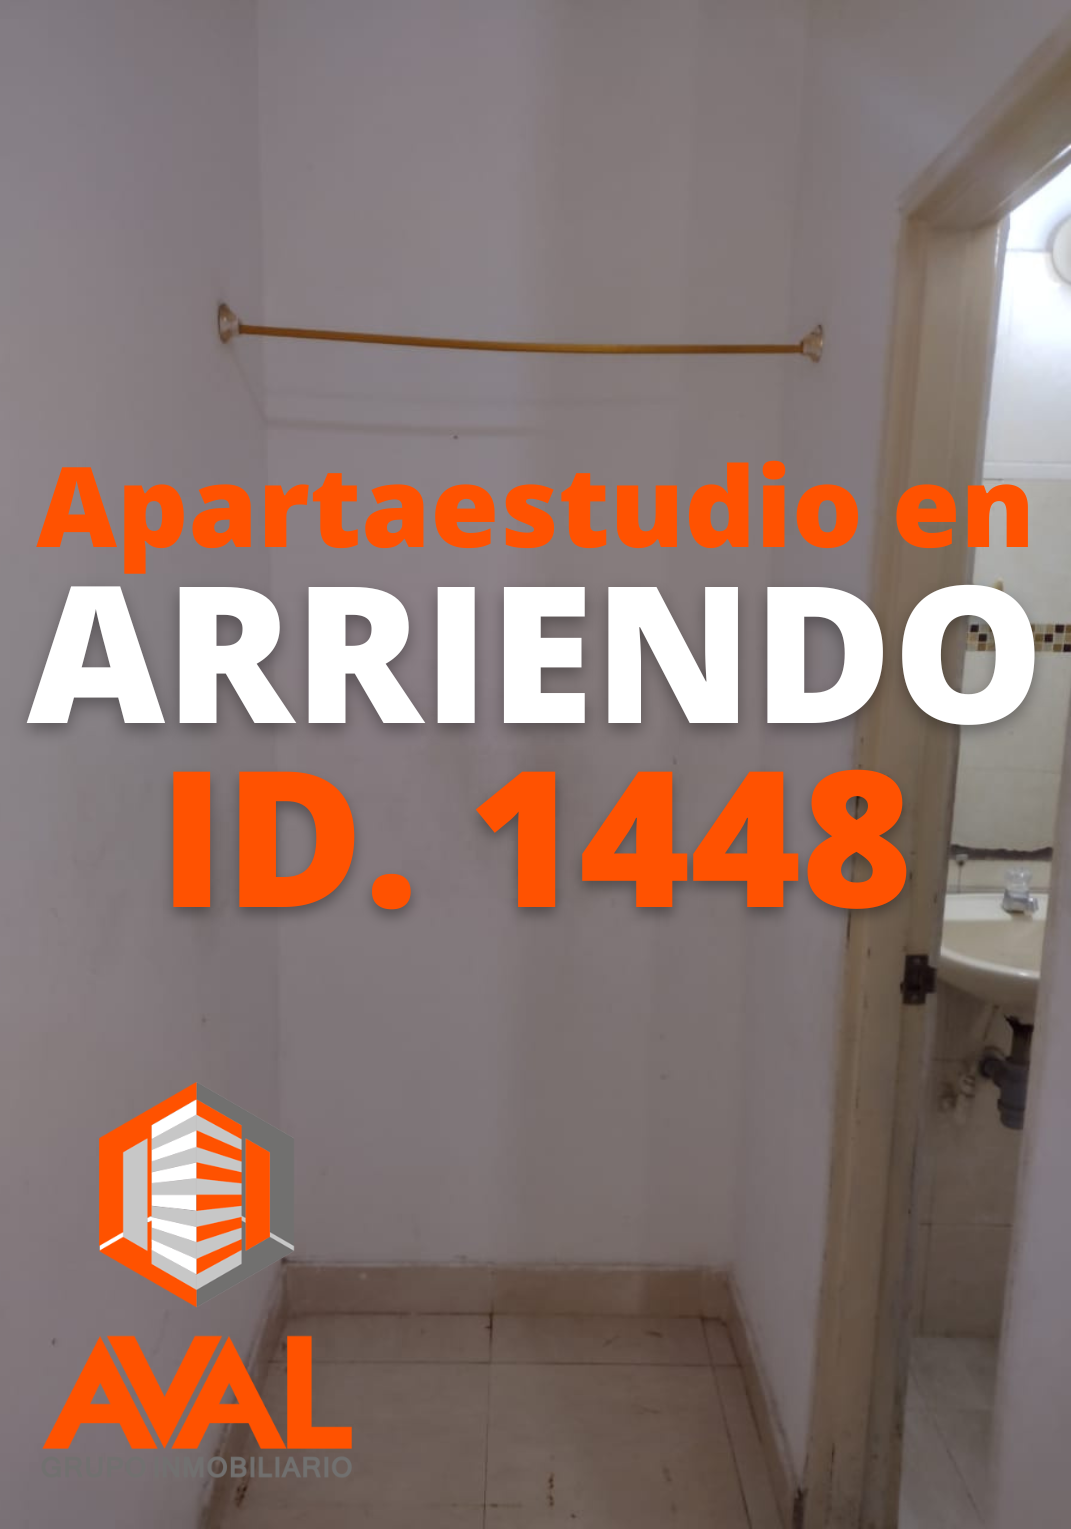 APARTAESTUDIO EN ARRIENDO, EL BOSQUE ID 1448